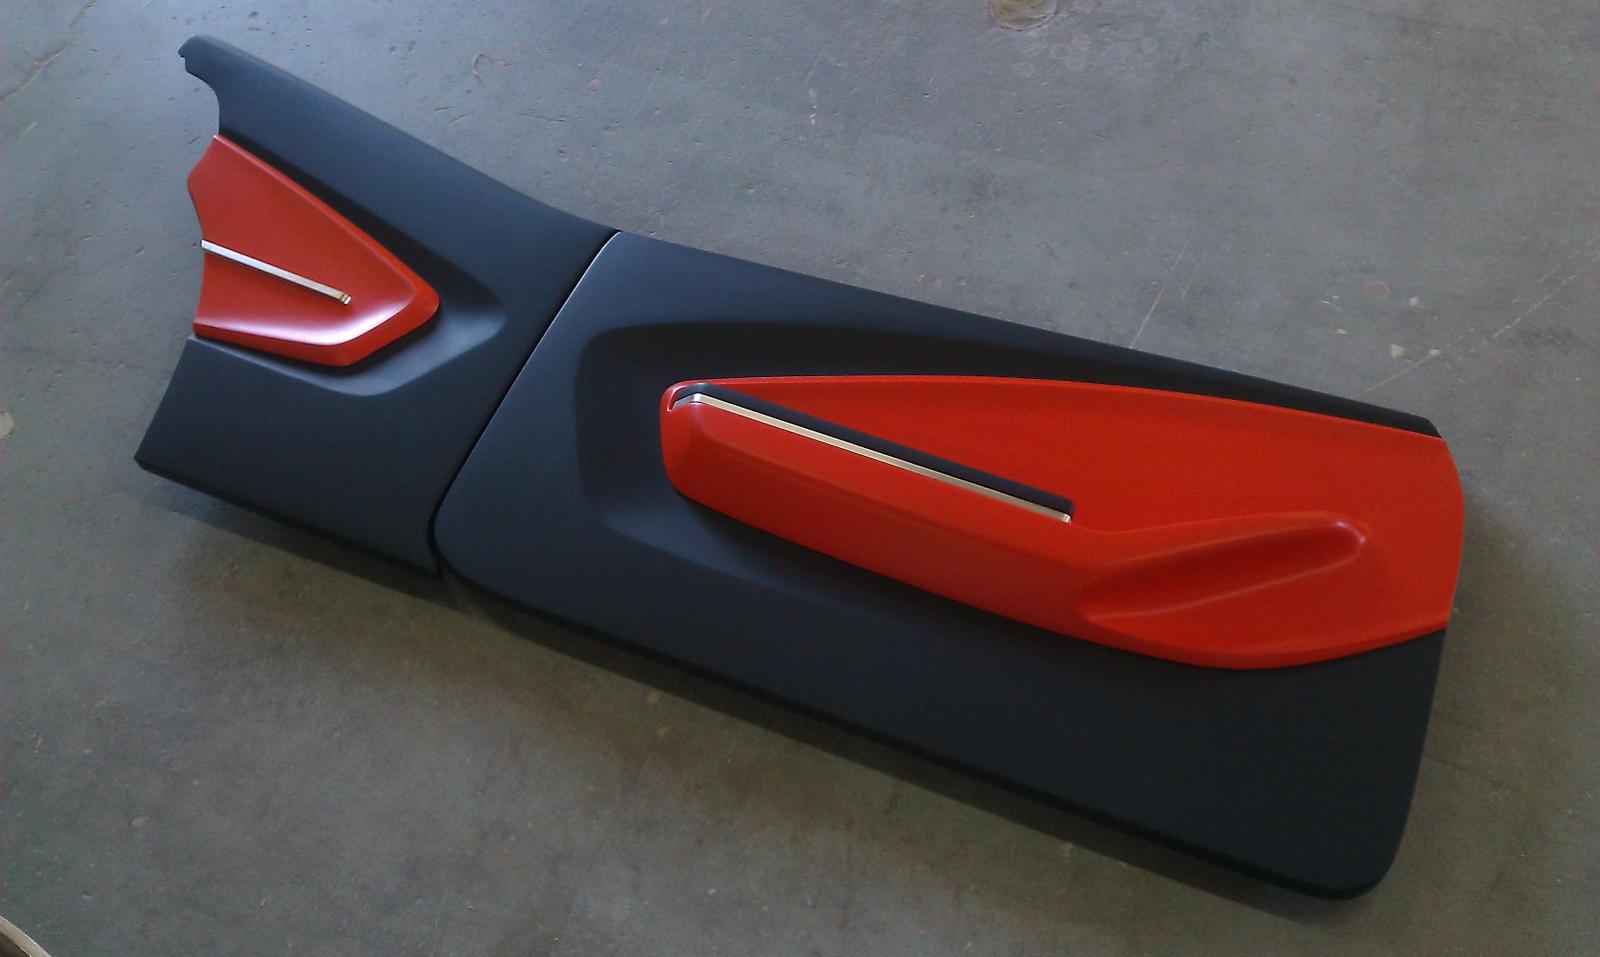 New 67 69 Camaro Firebird Door Panels From Mci